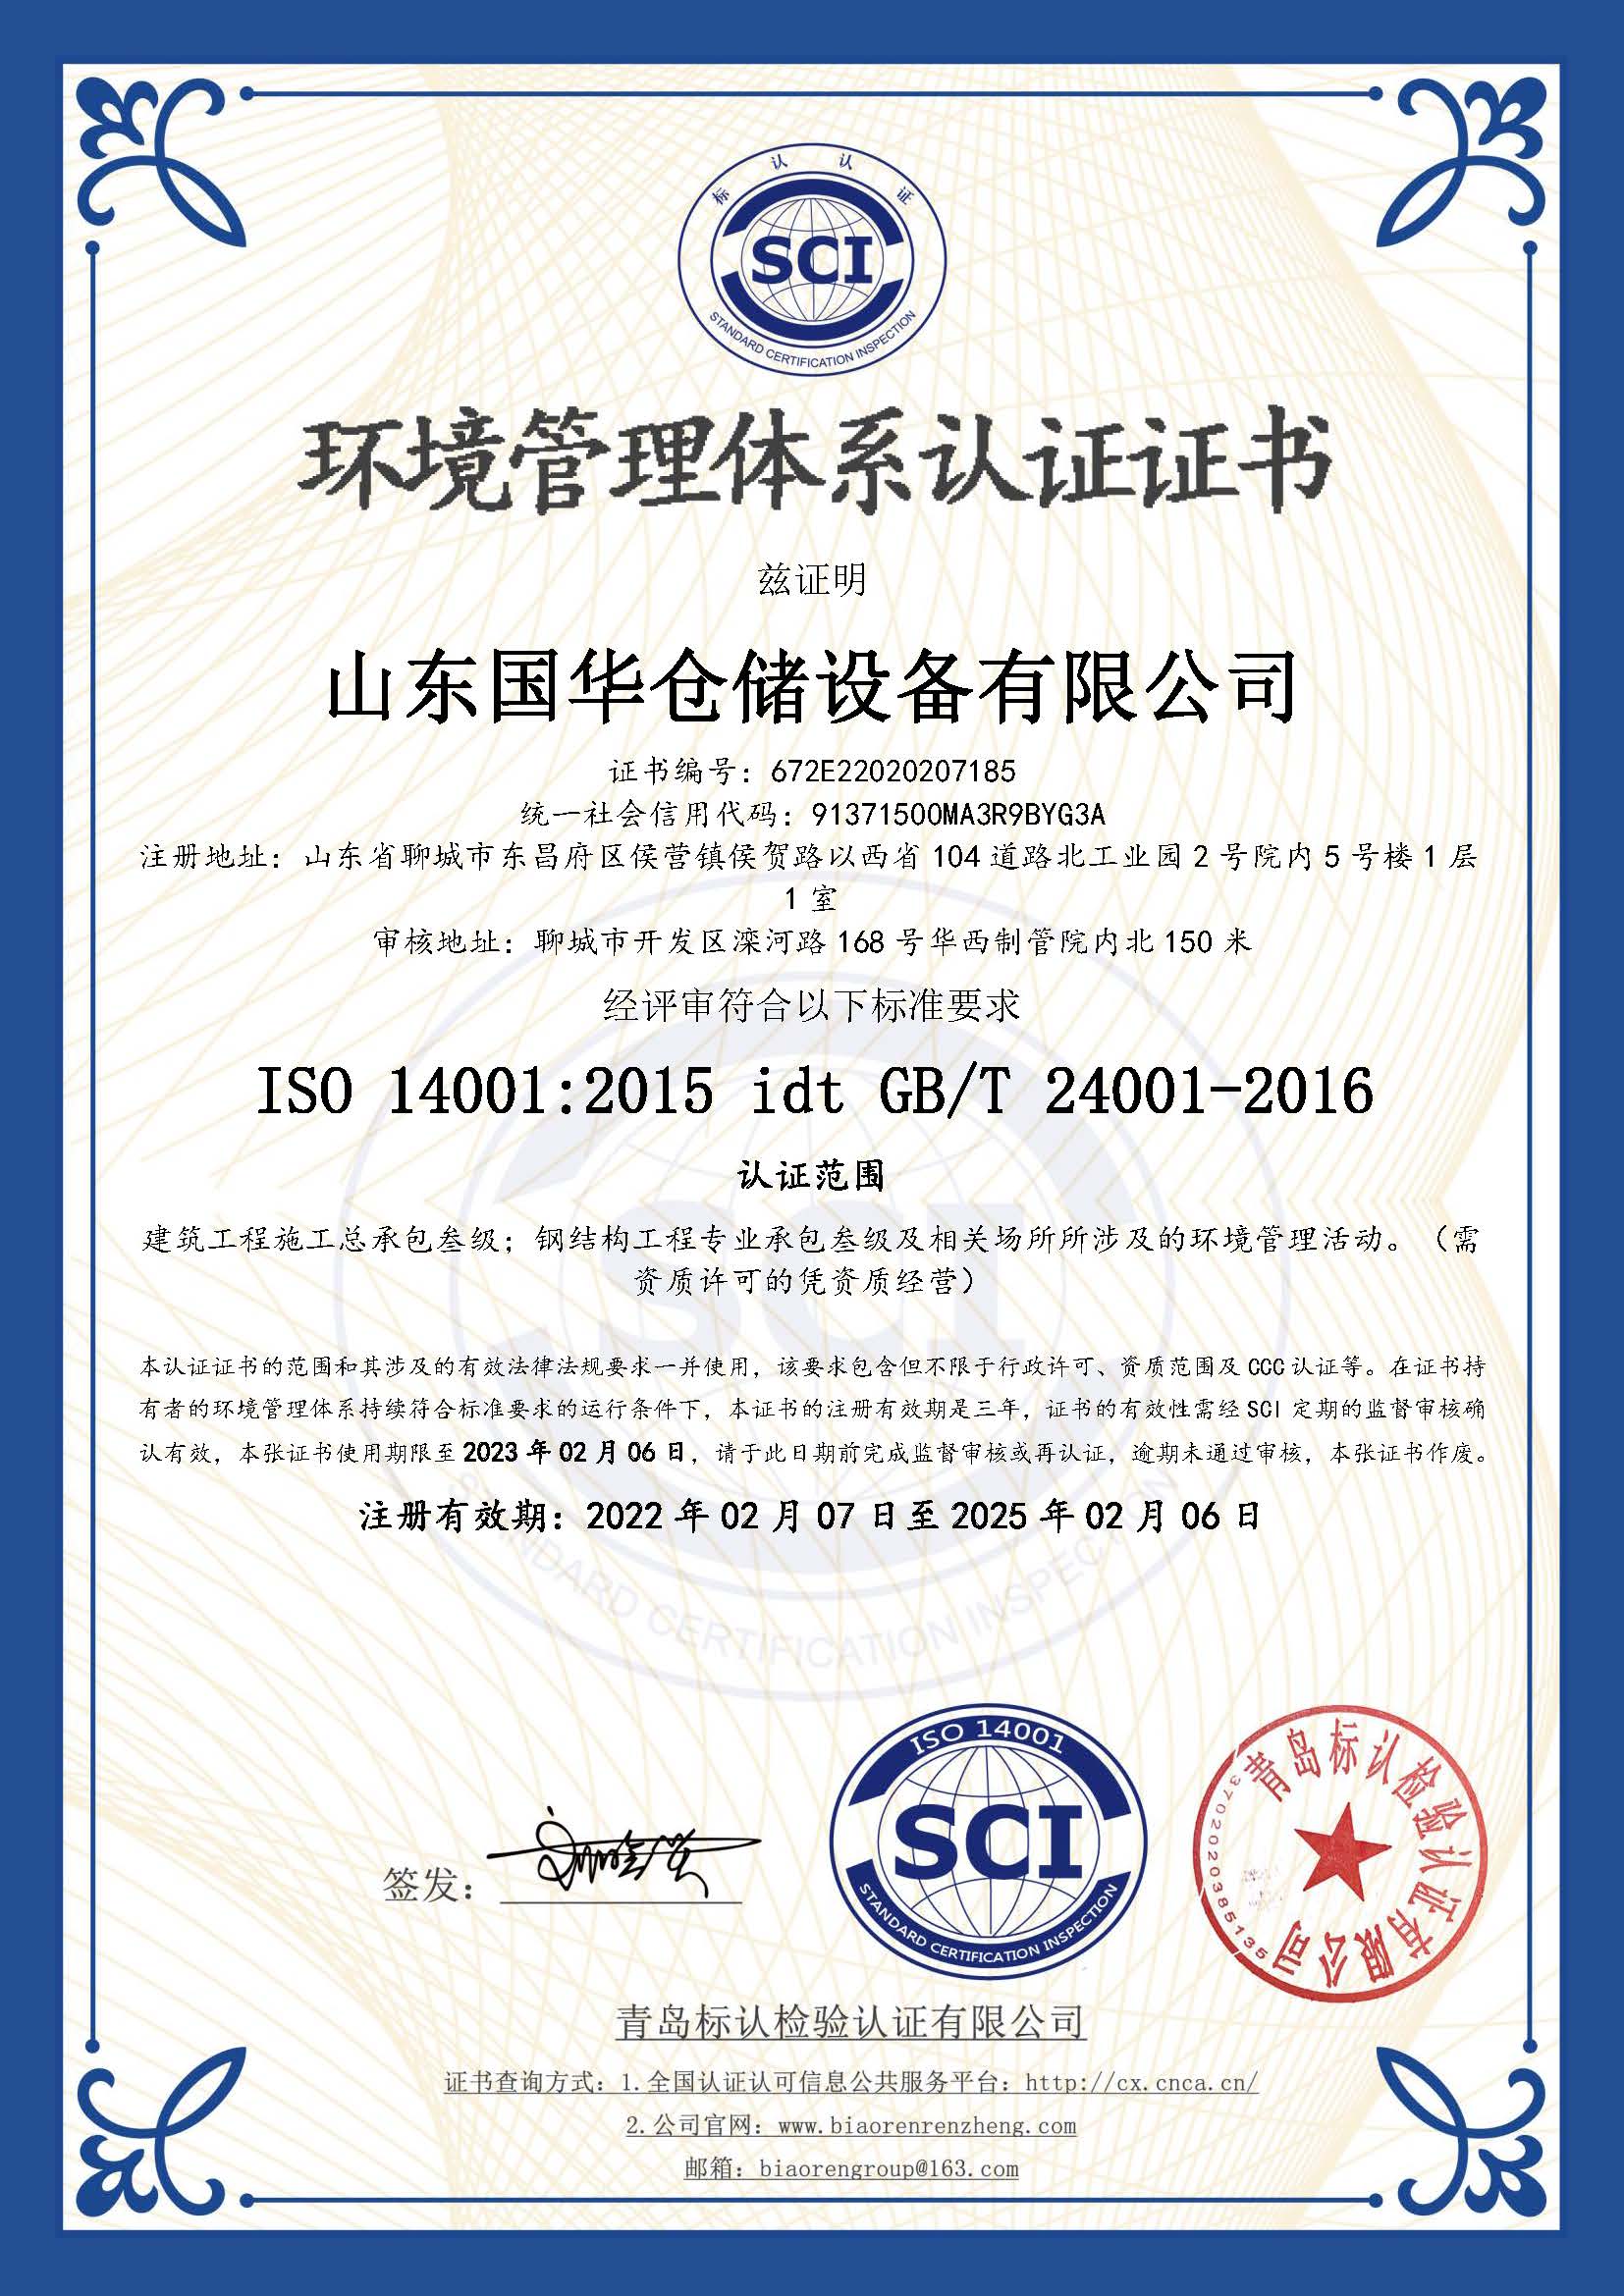 梧州钢板仓环境管理体系认证证书